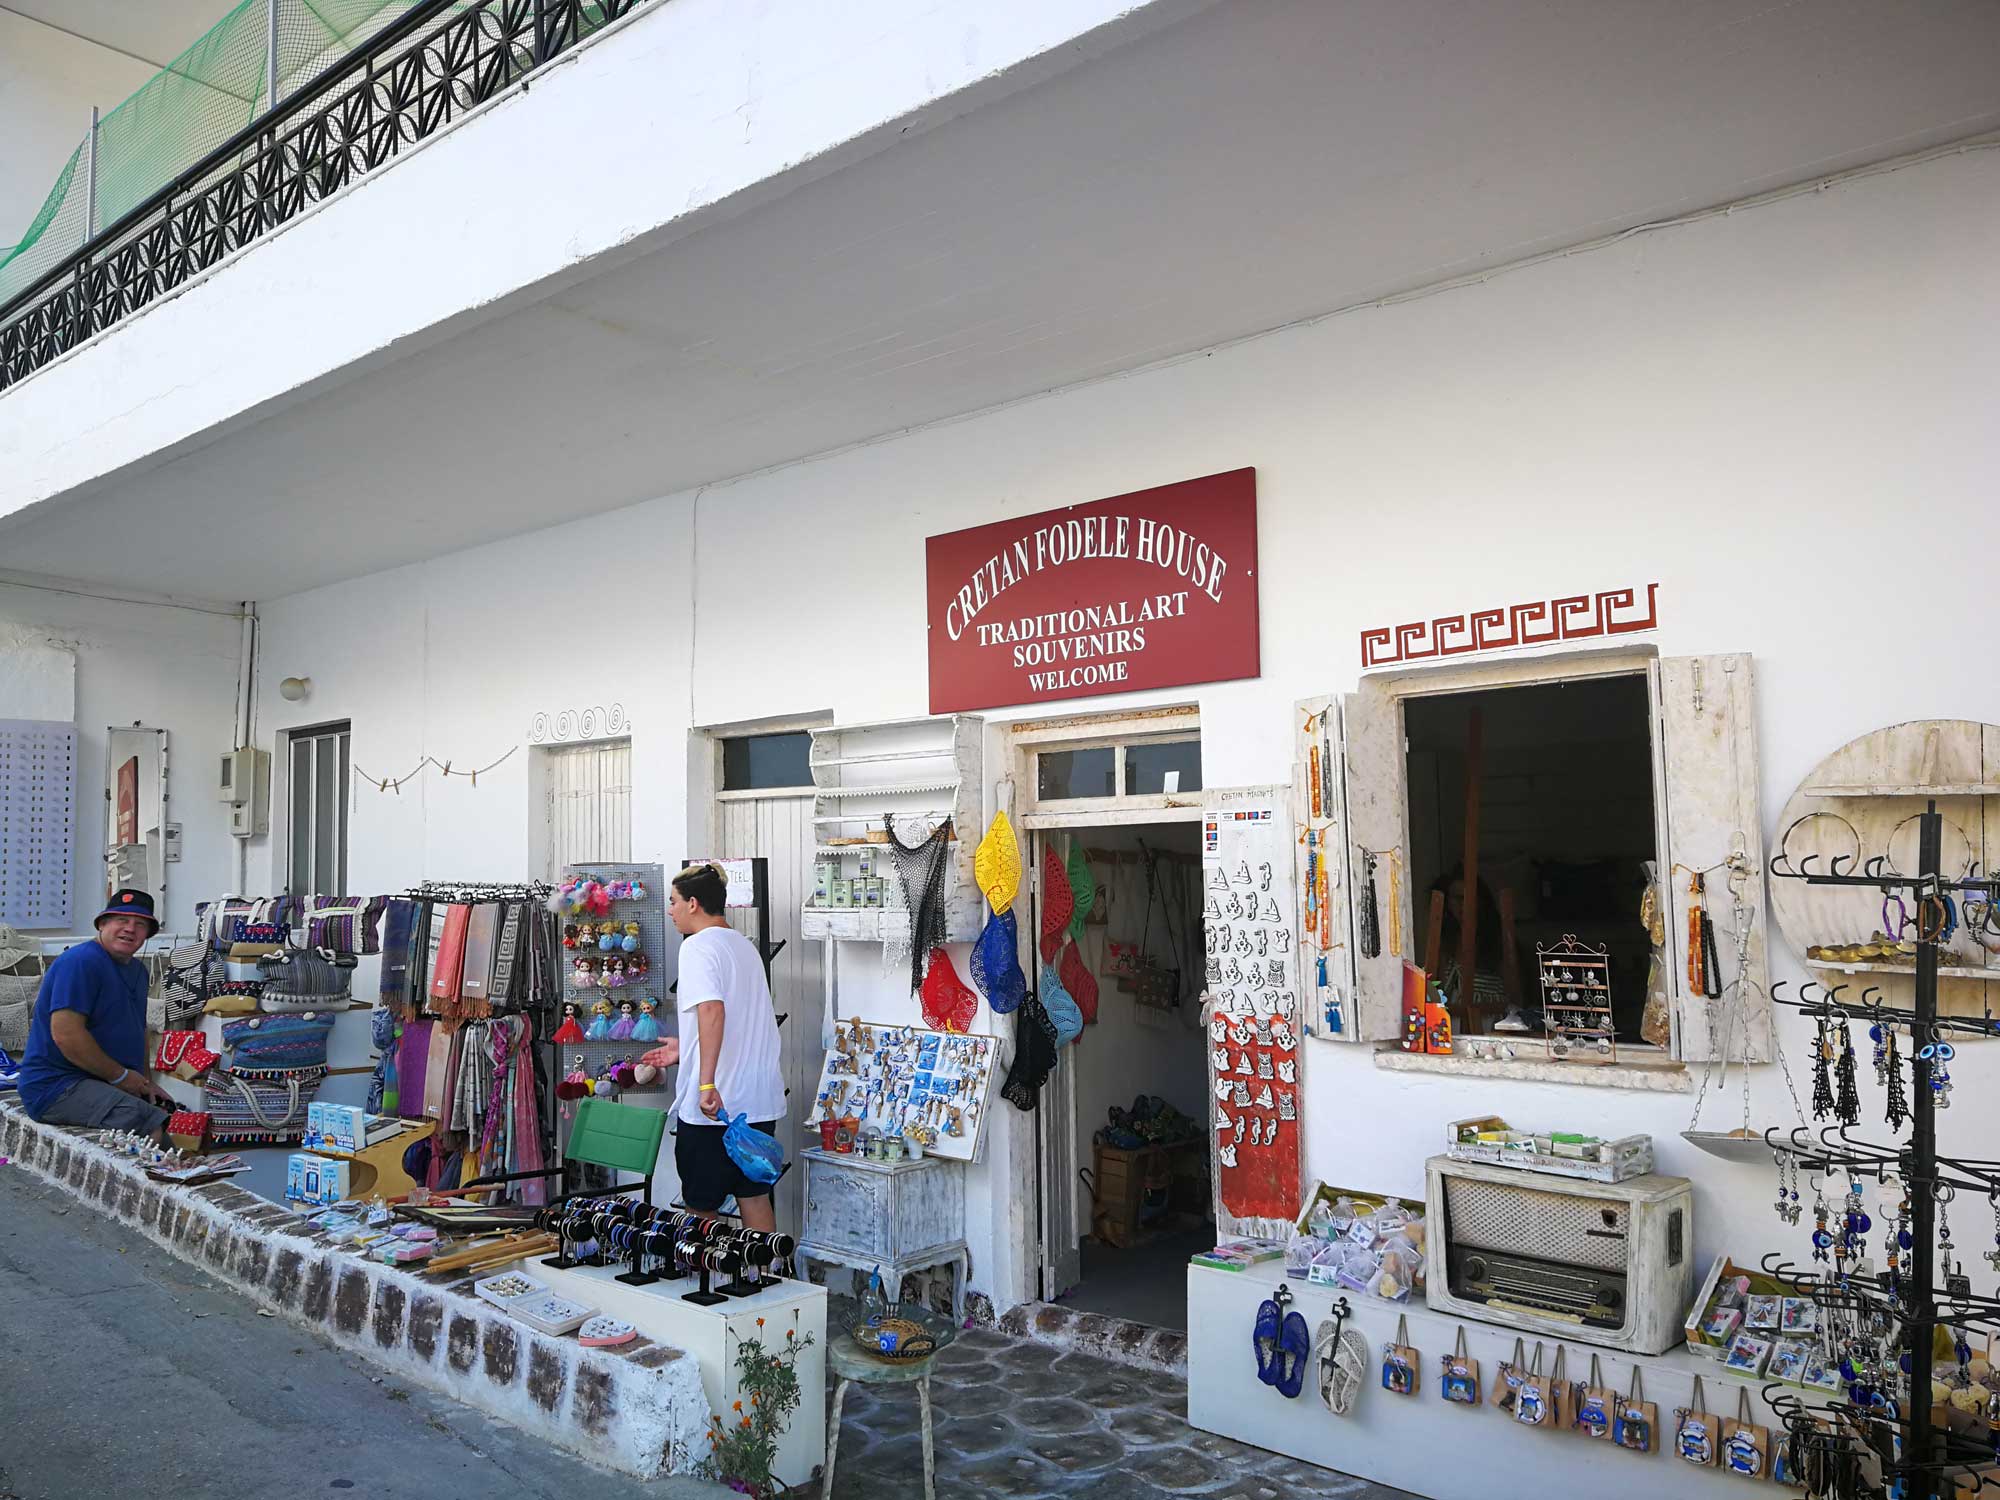 Cretan Fodele House souvenir shop.